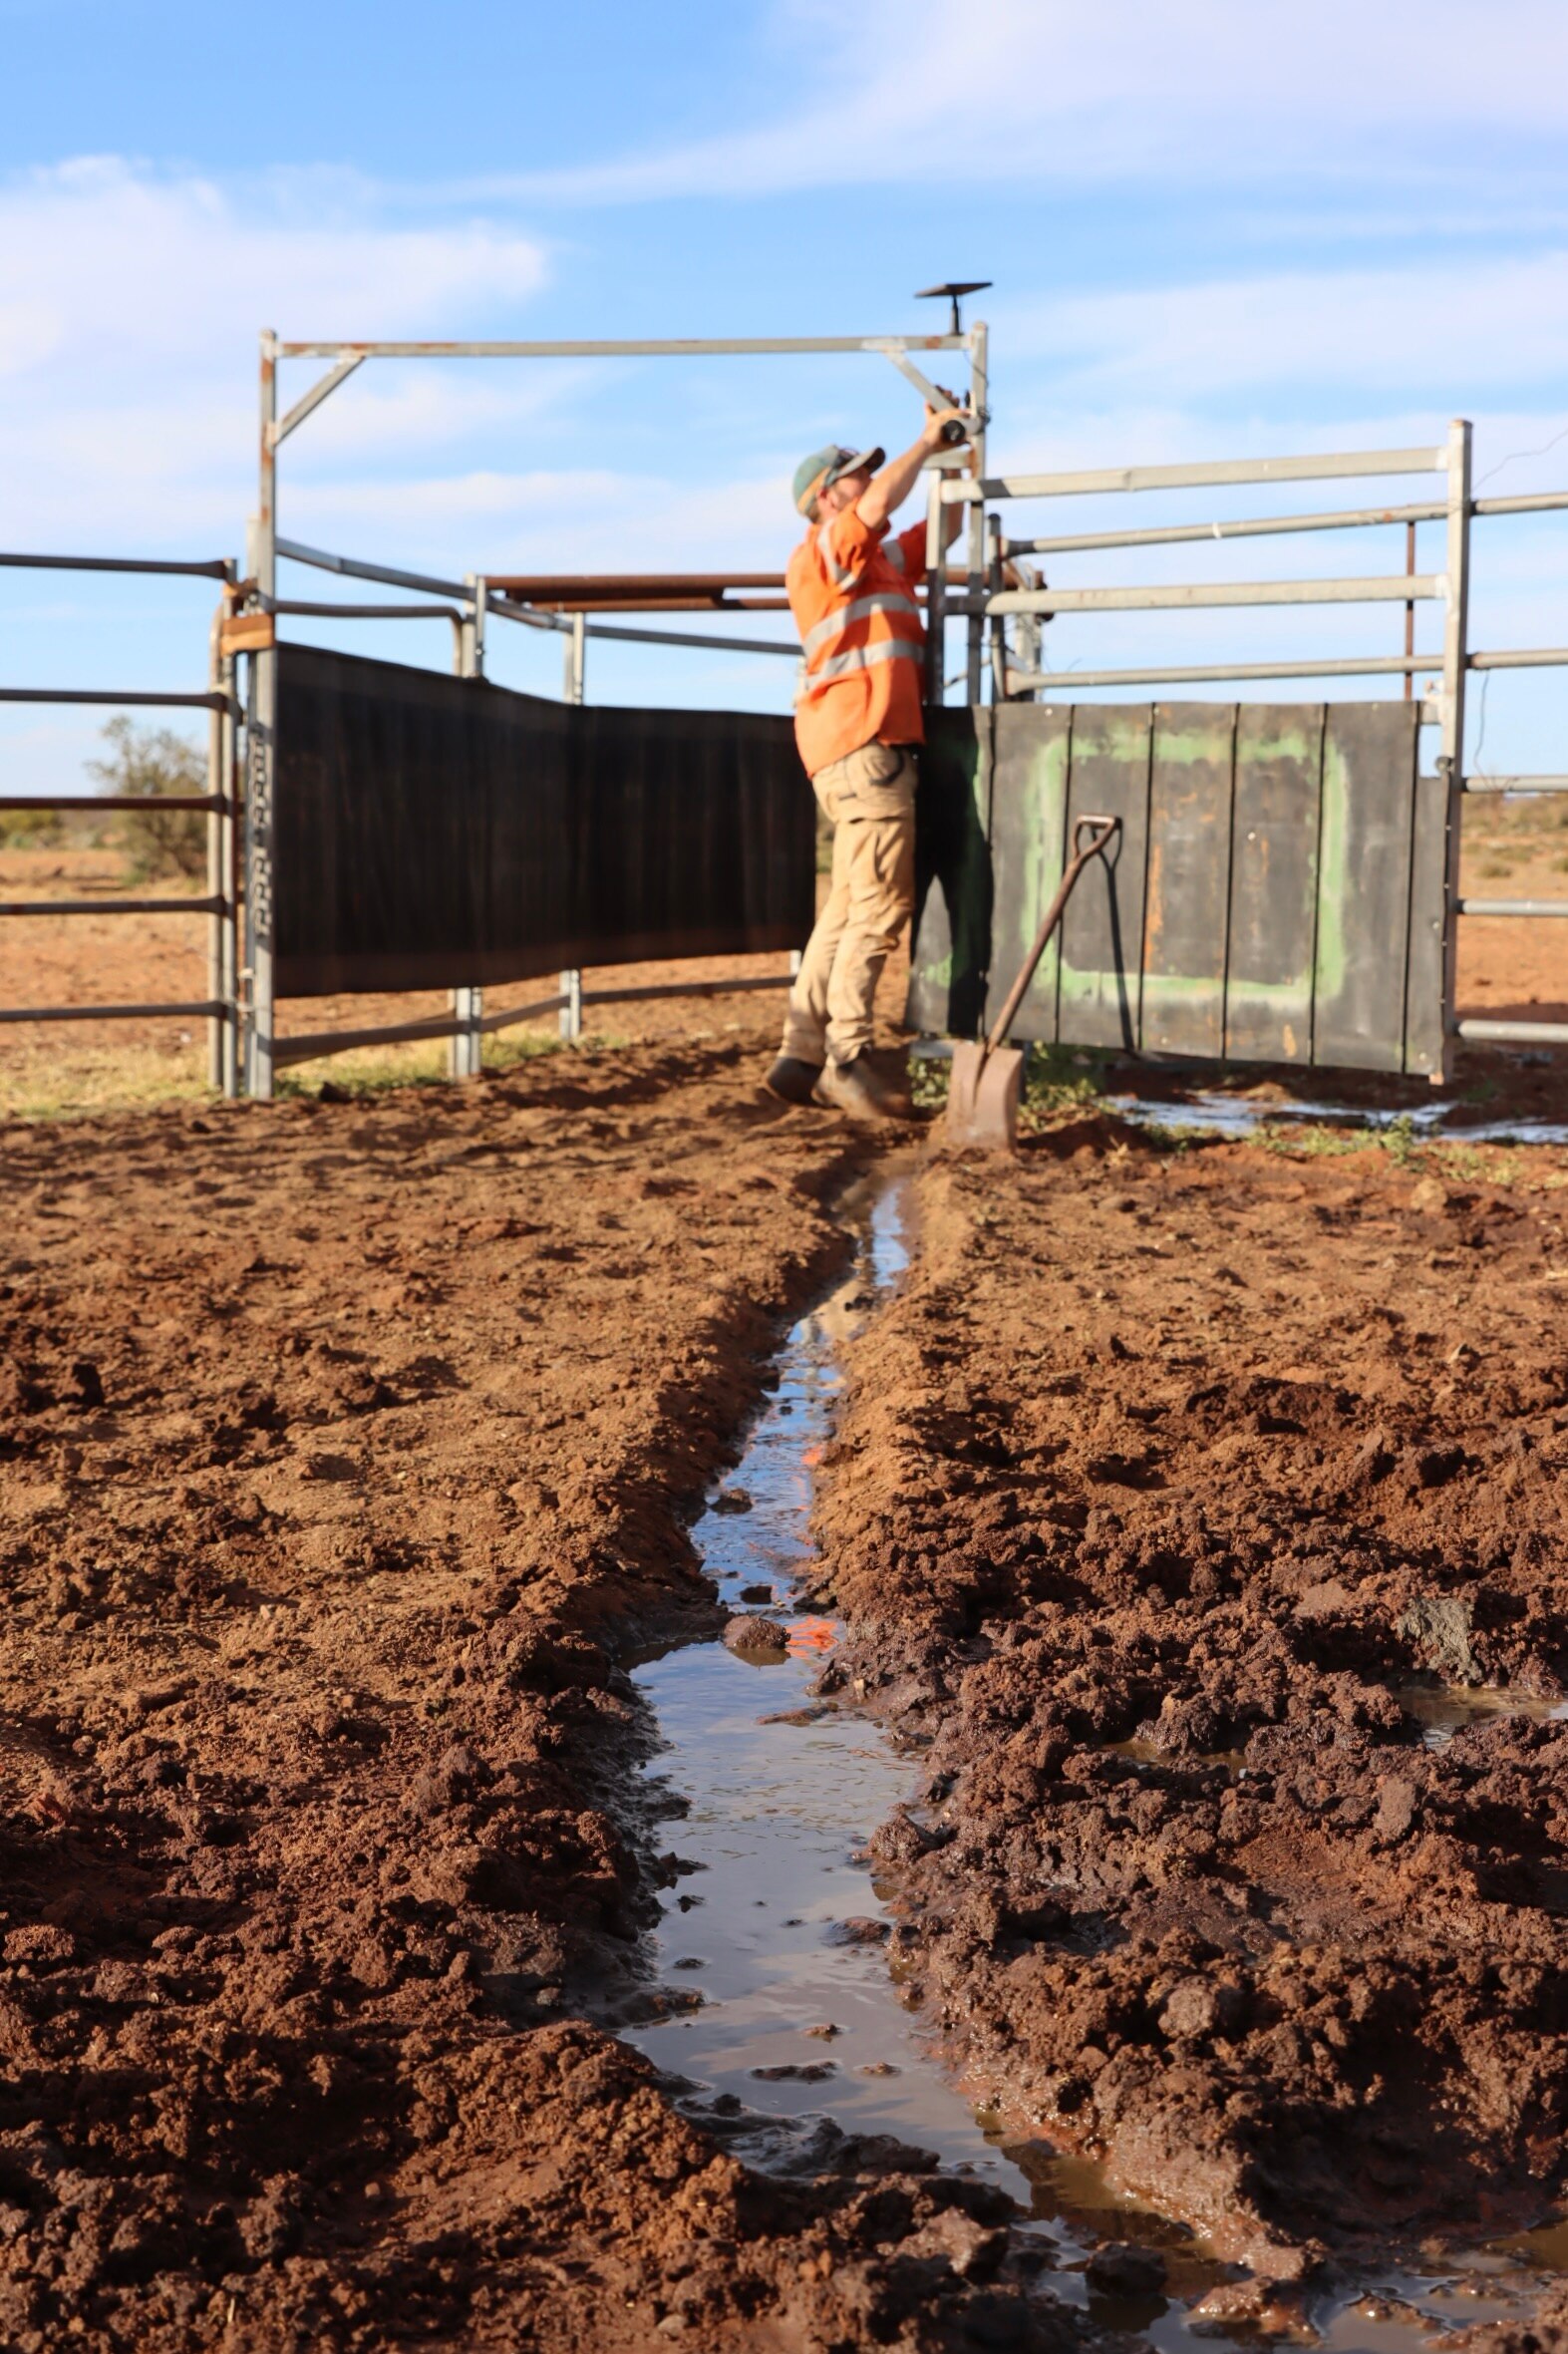 Un hombre revisando una cámara en un corral de ganado.